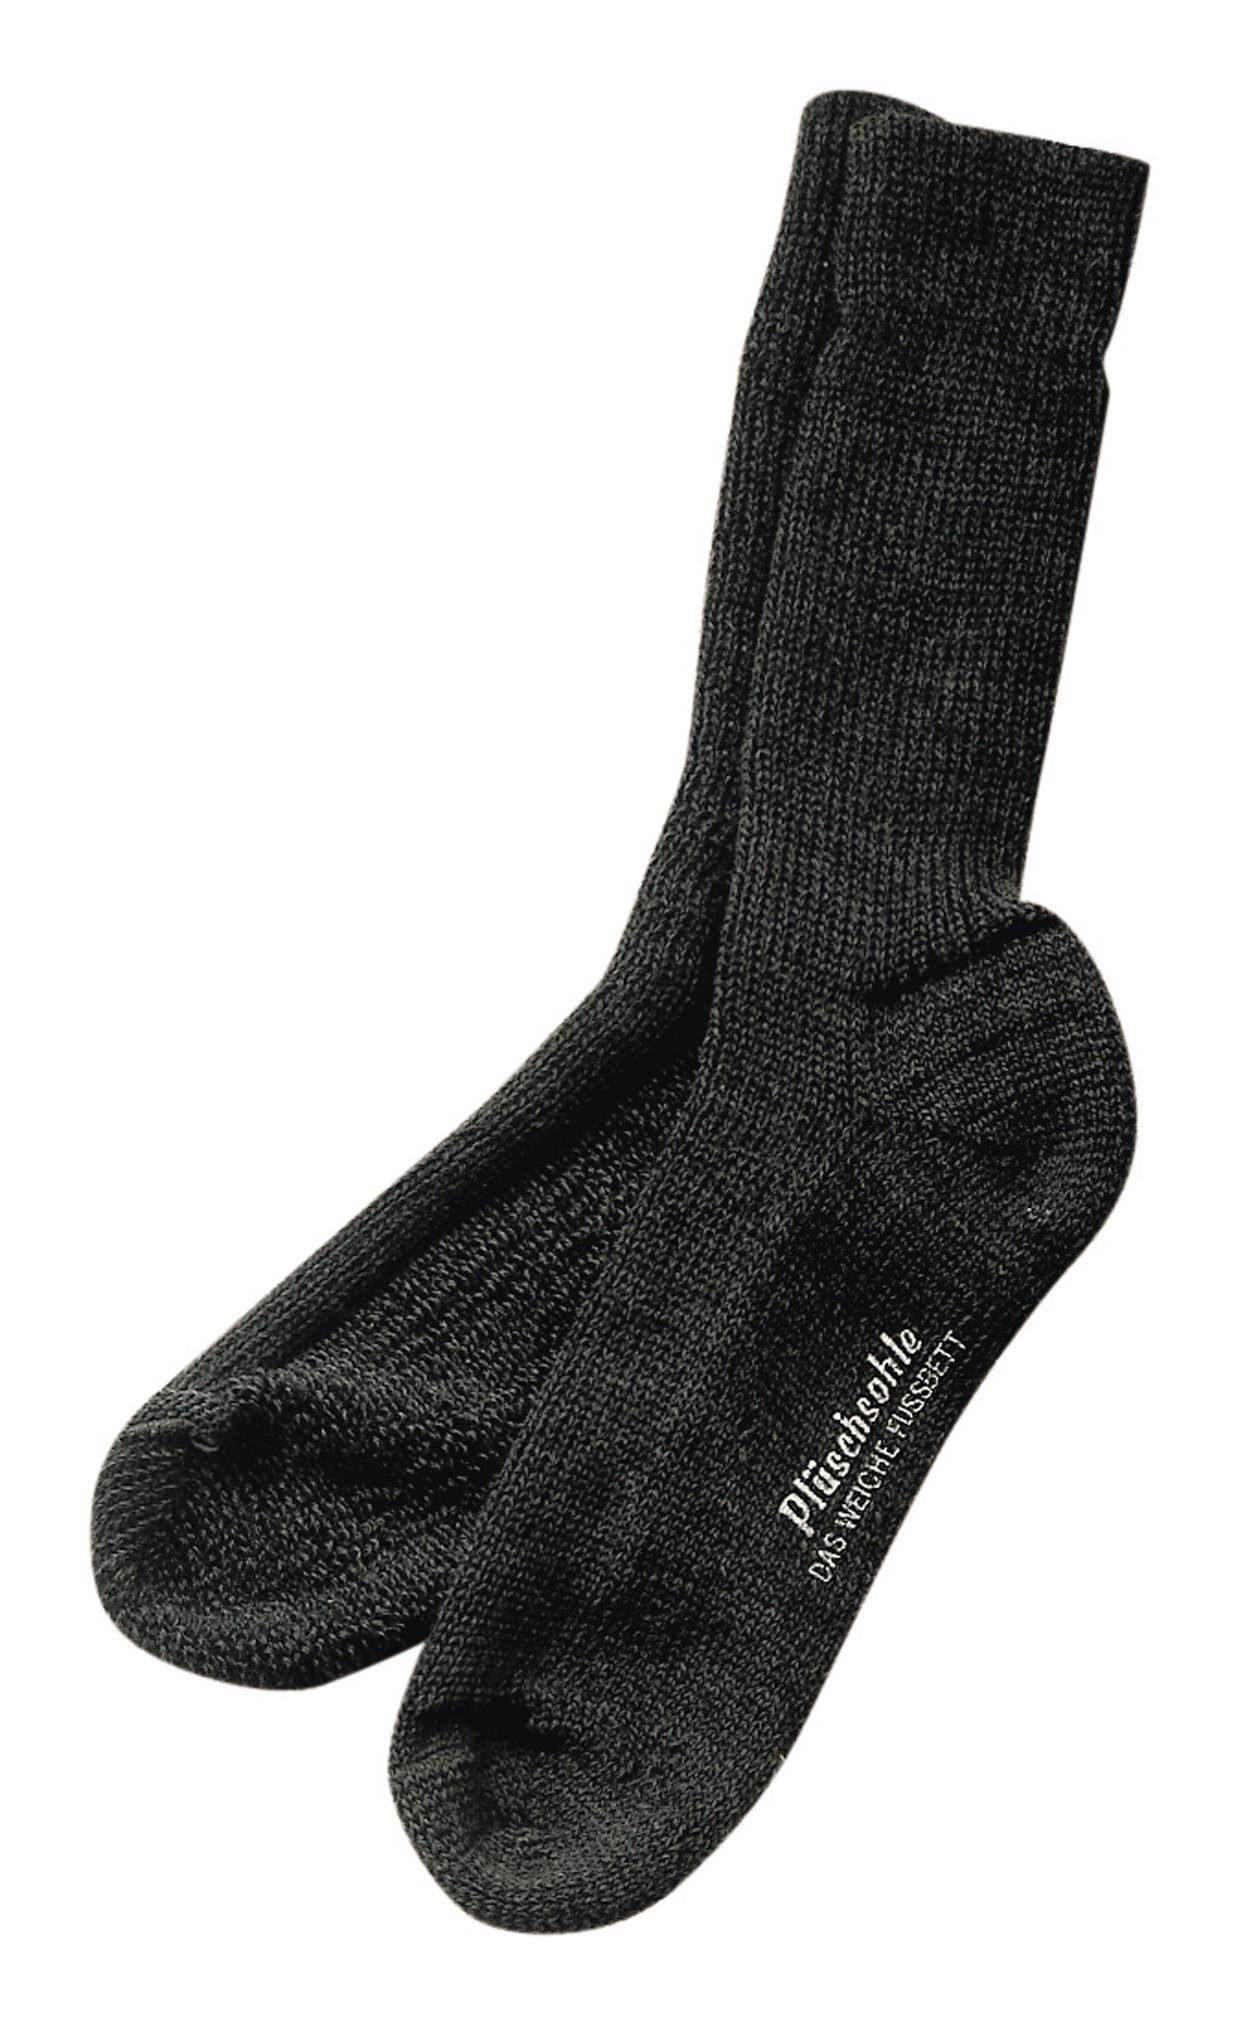 43 Socken anthrazit - Größe 44 fortis Gesundheitssocke